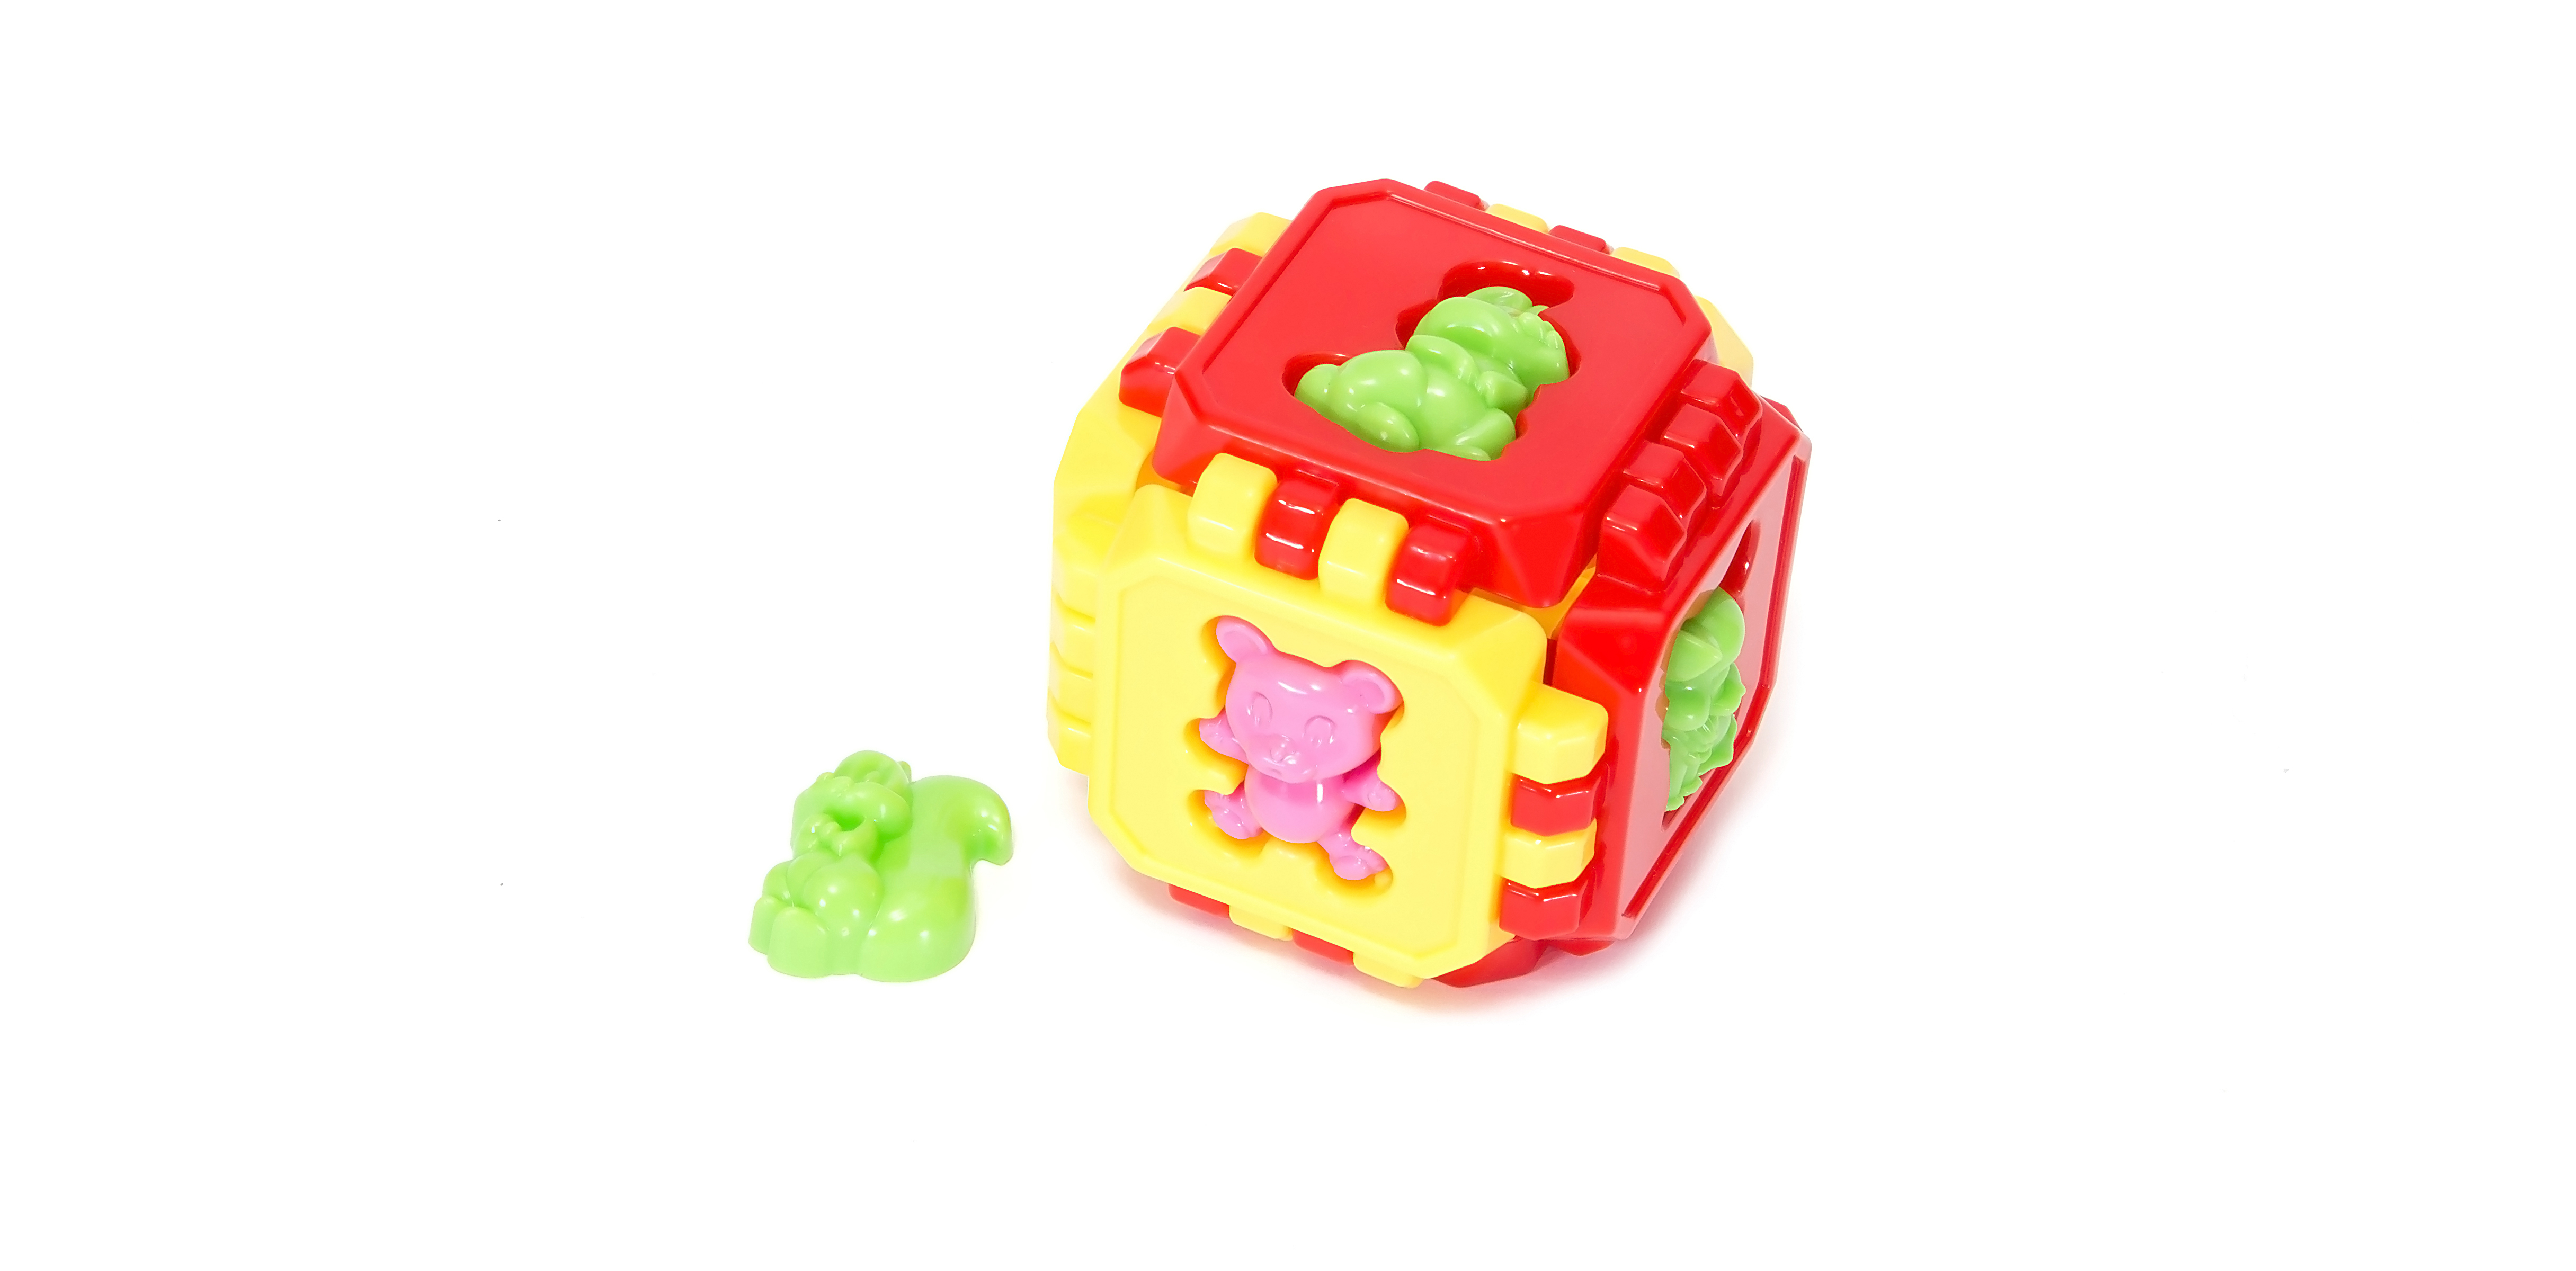 Логическая игрушка Пазл–Куб М (Орион)